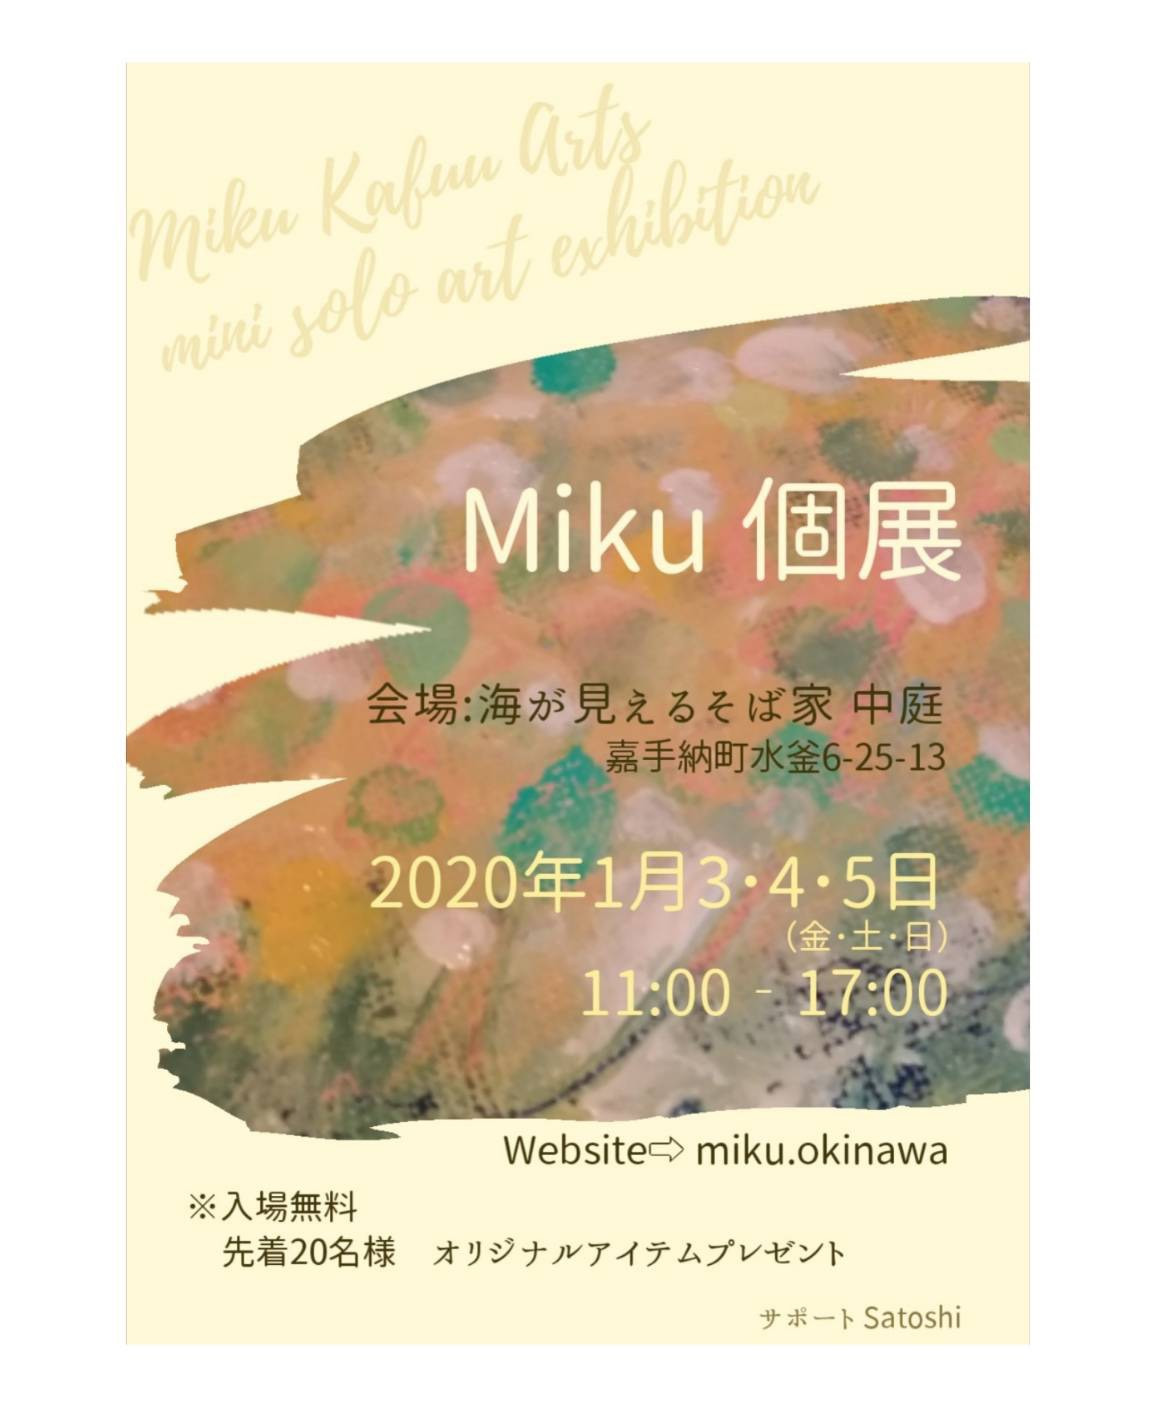 2020年1月 Mikuミニ個展